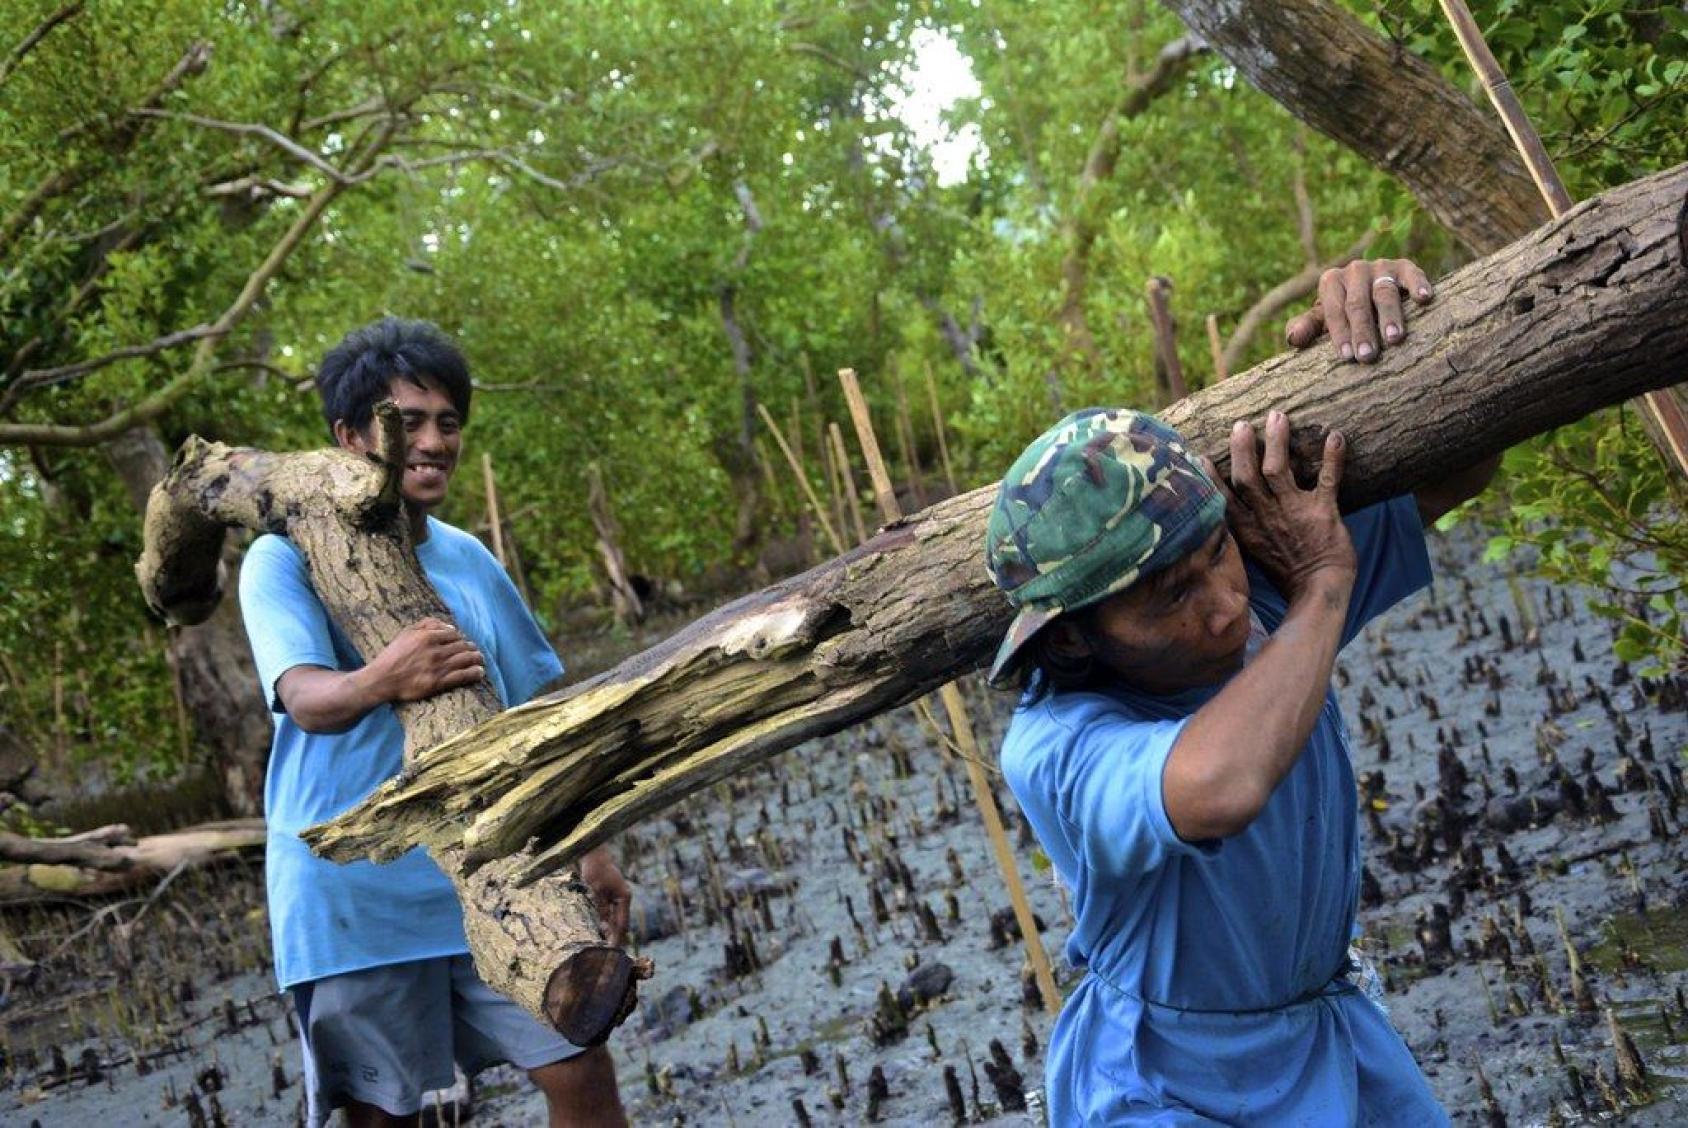 Dos hombres llevan un gran tronco a través de un pantano. Uno de ellos sonríe mientras sostiene el tronco sobre su hombro.